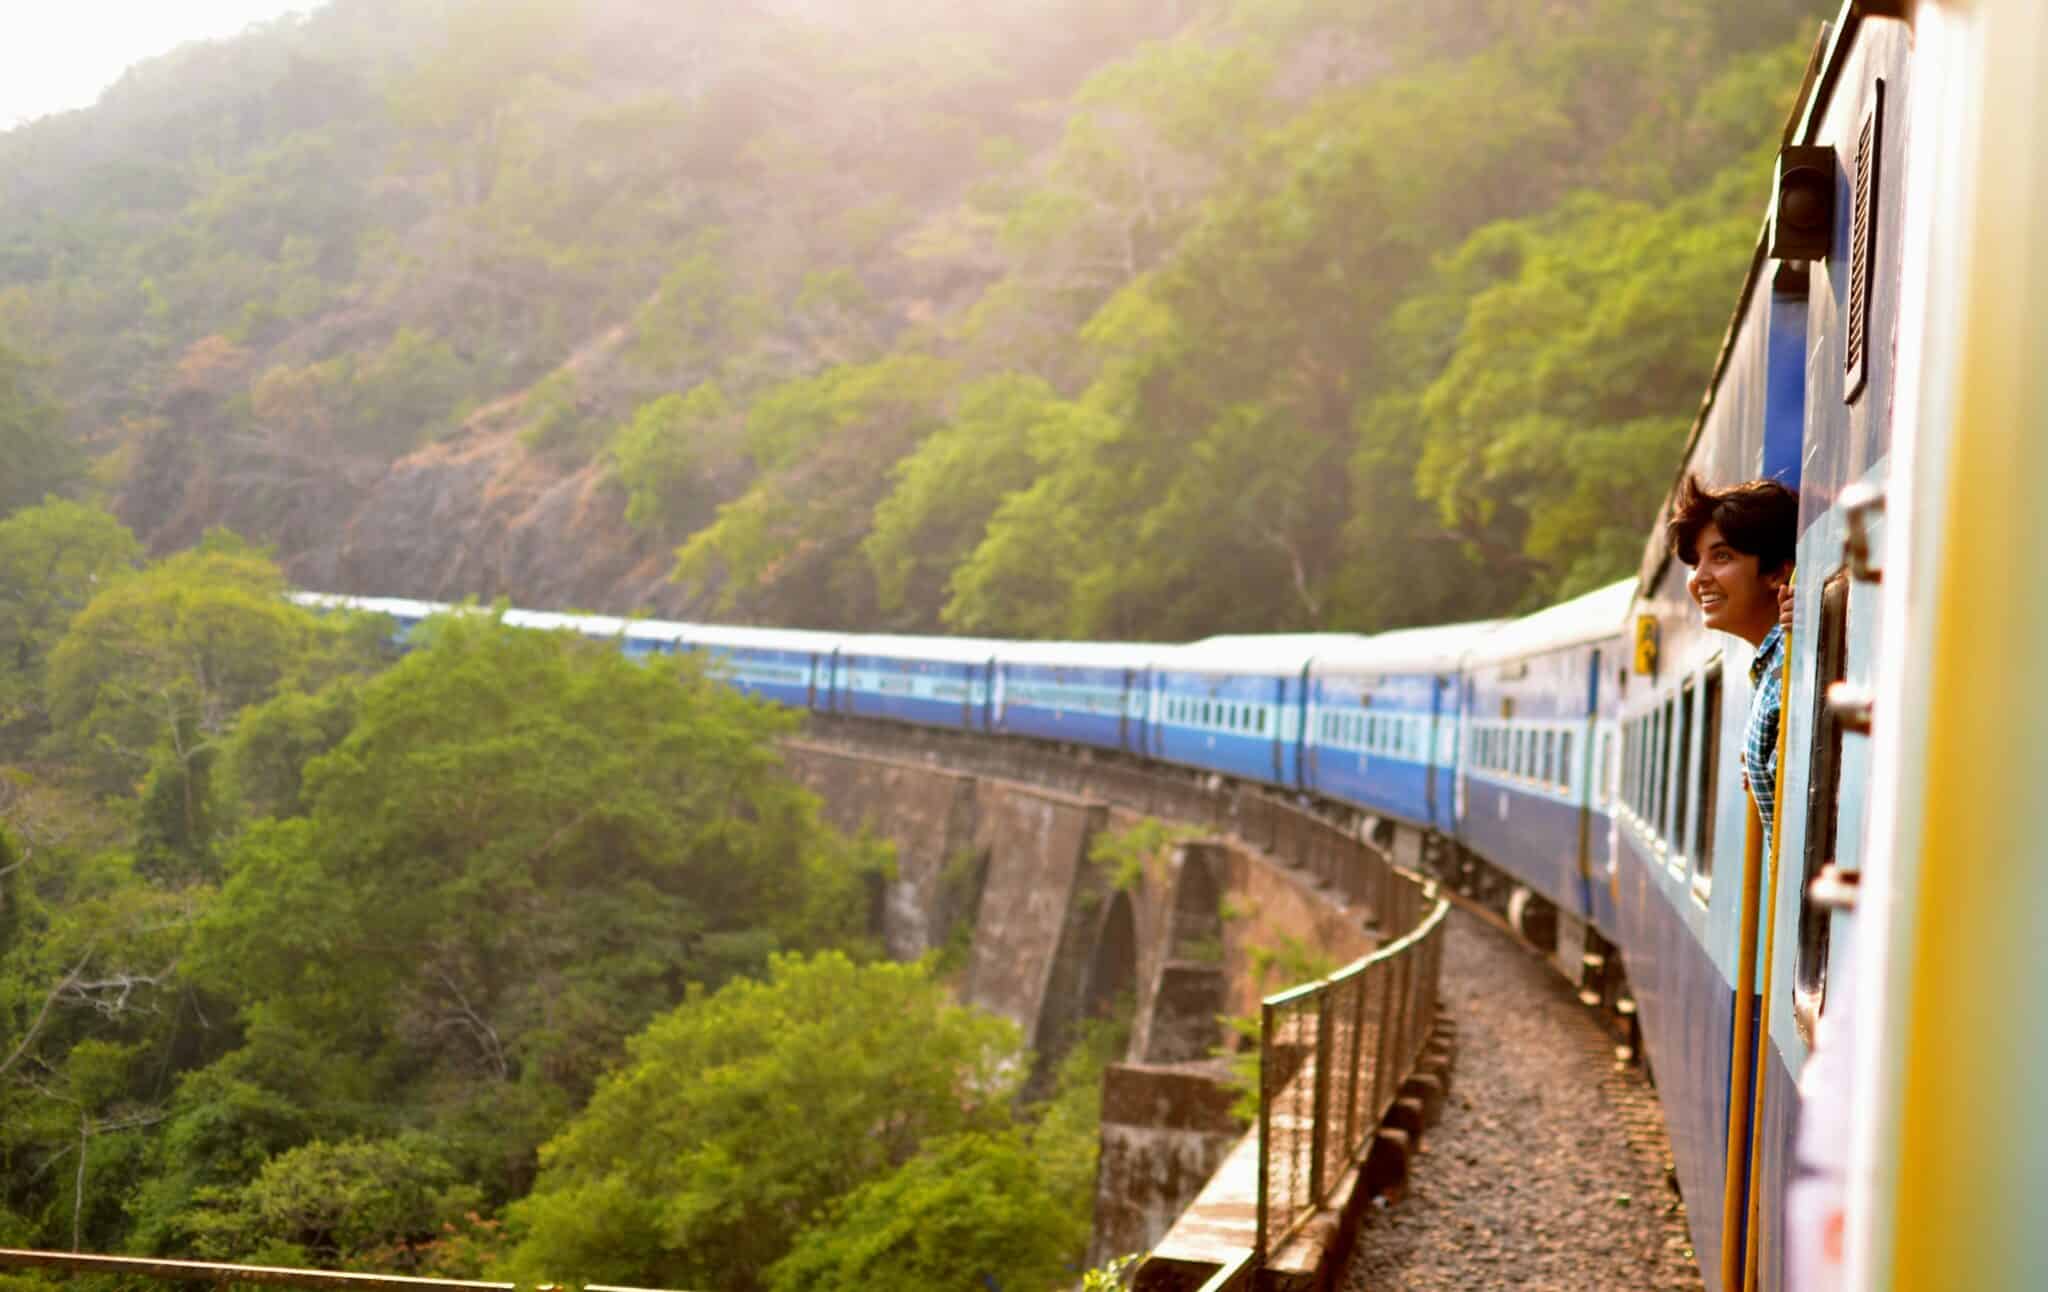 découvrez le plaisir du voyage en train et explorez de nouveaux horizons avec notre guide du voyage en train.